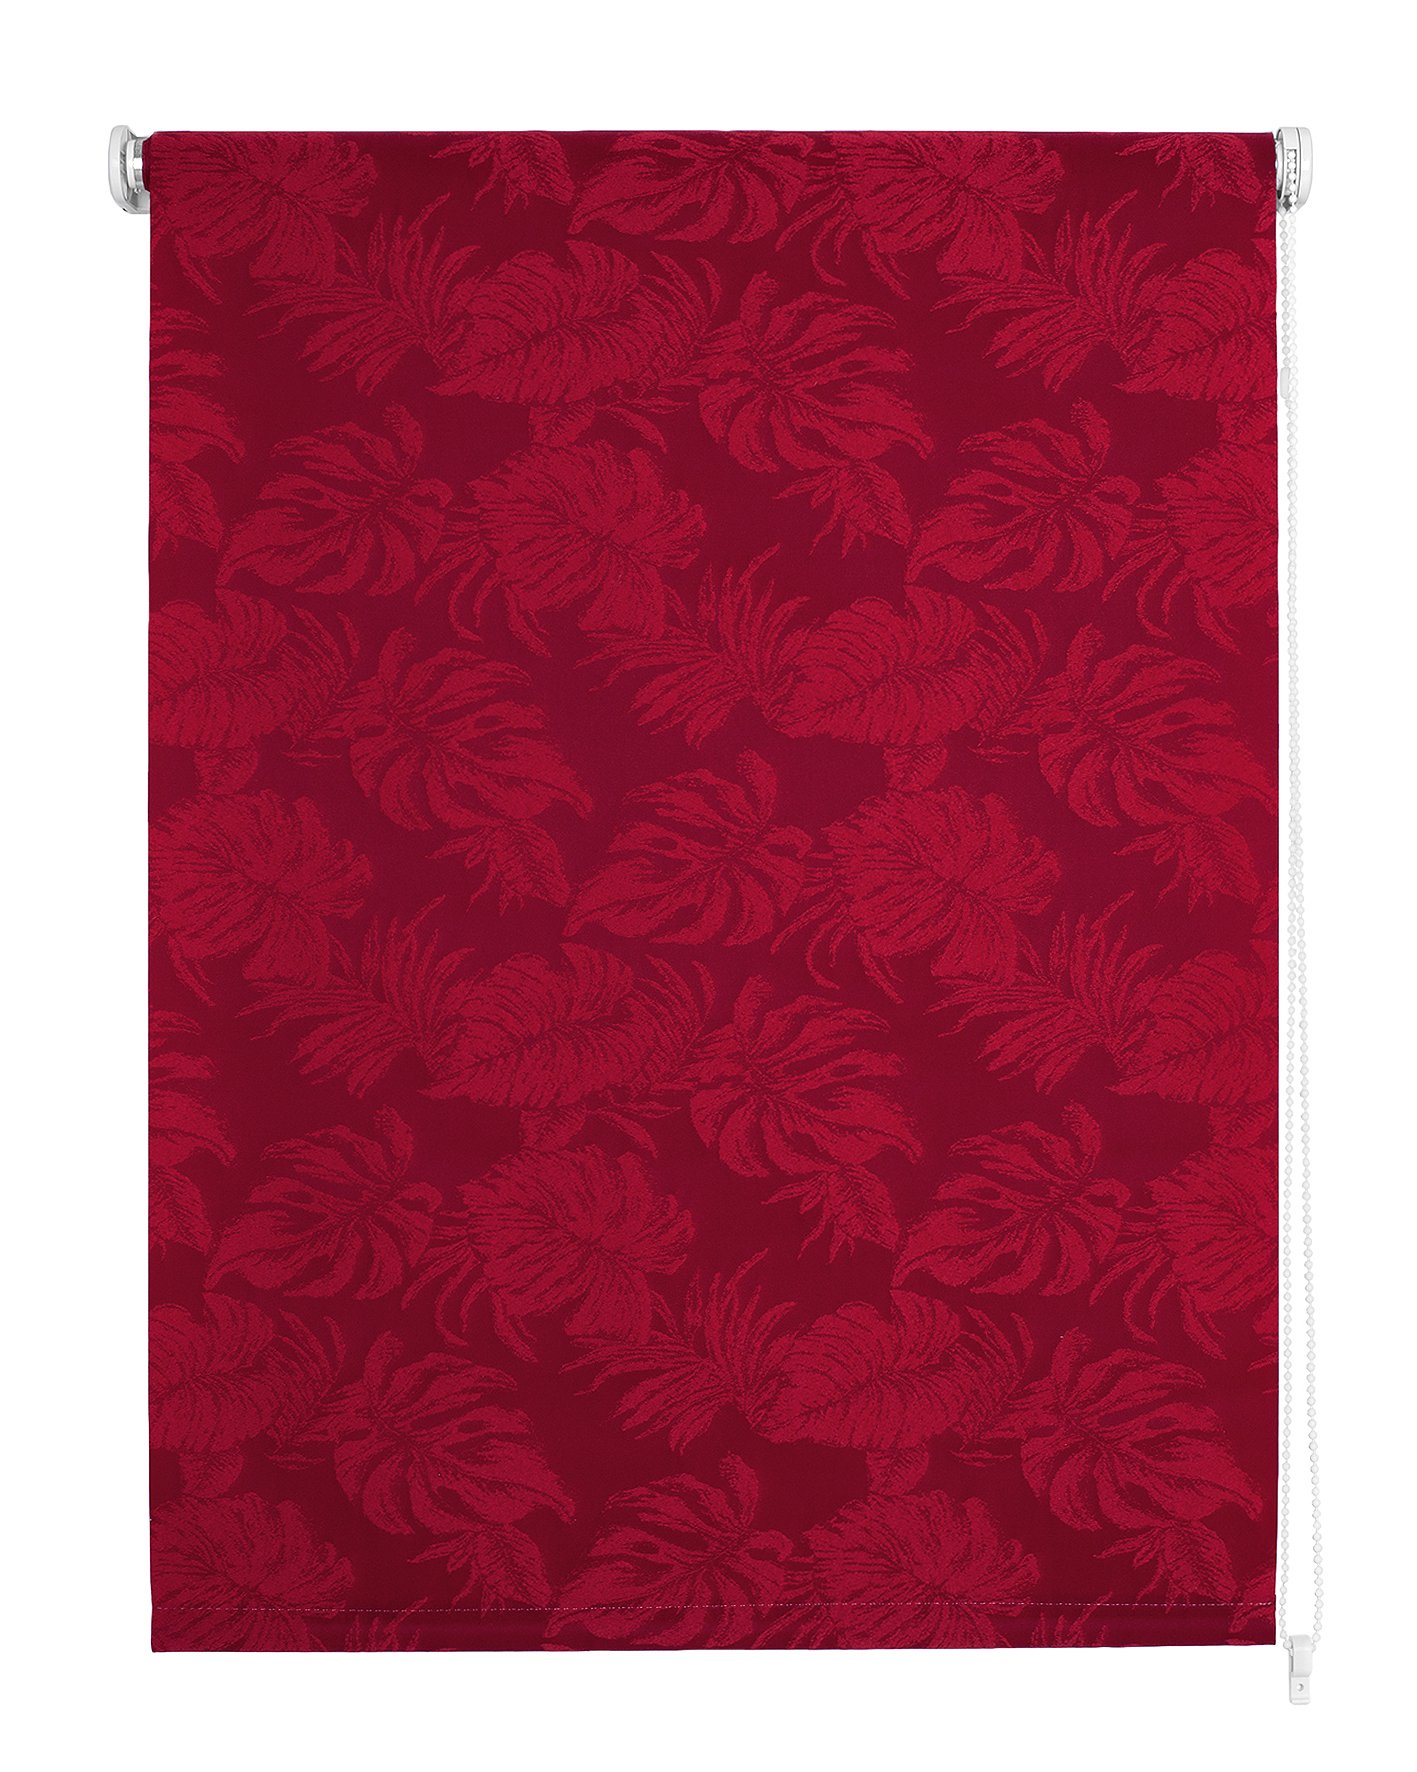 Klasikinė ritininė užuolaida OSLO, raudonos sp.,160 x 170 cm, 100 % poliesteris